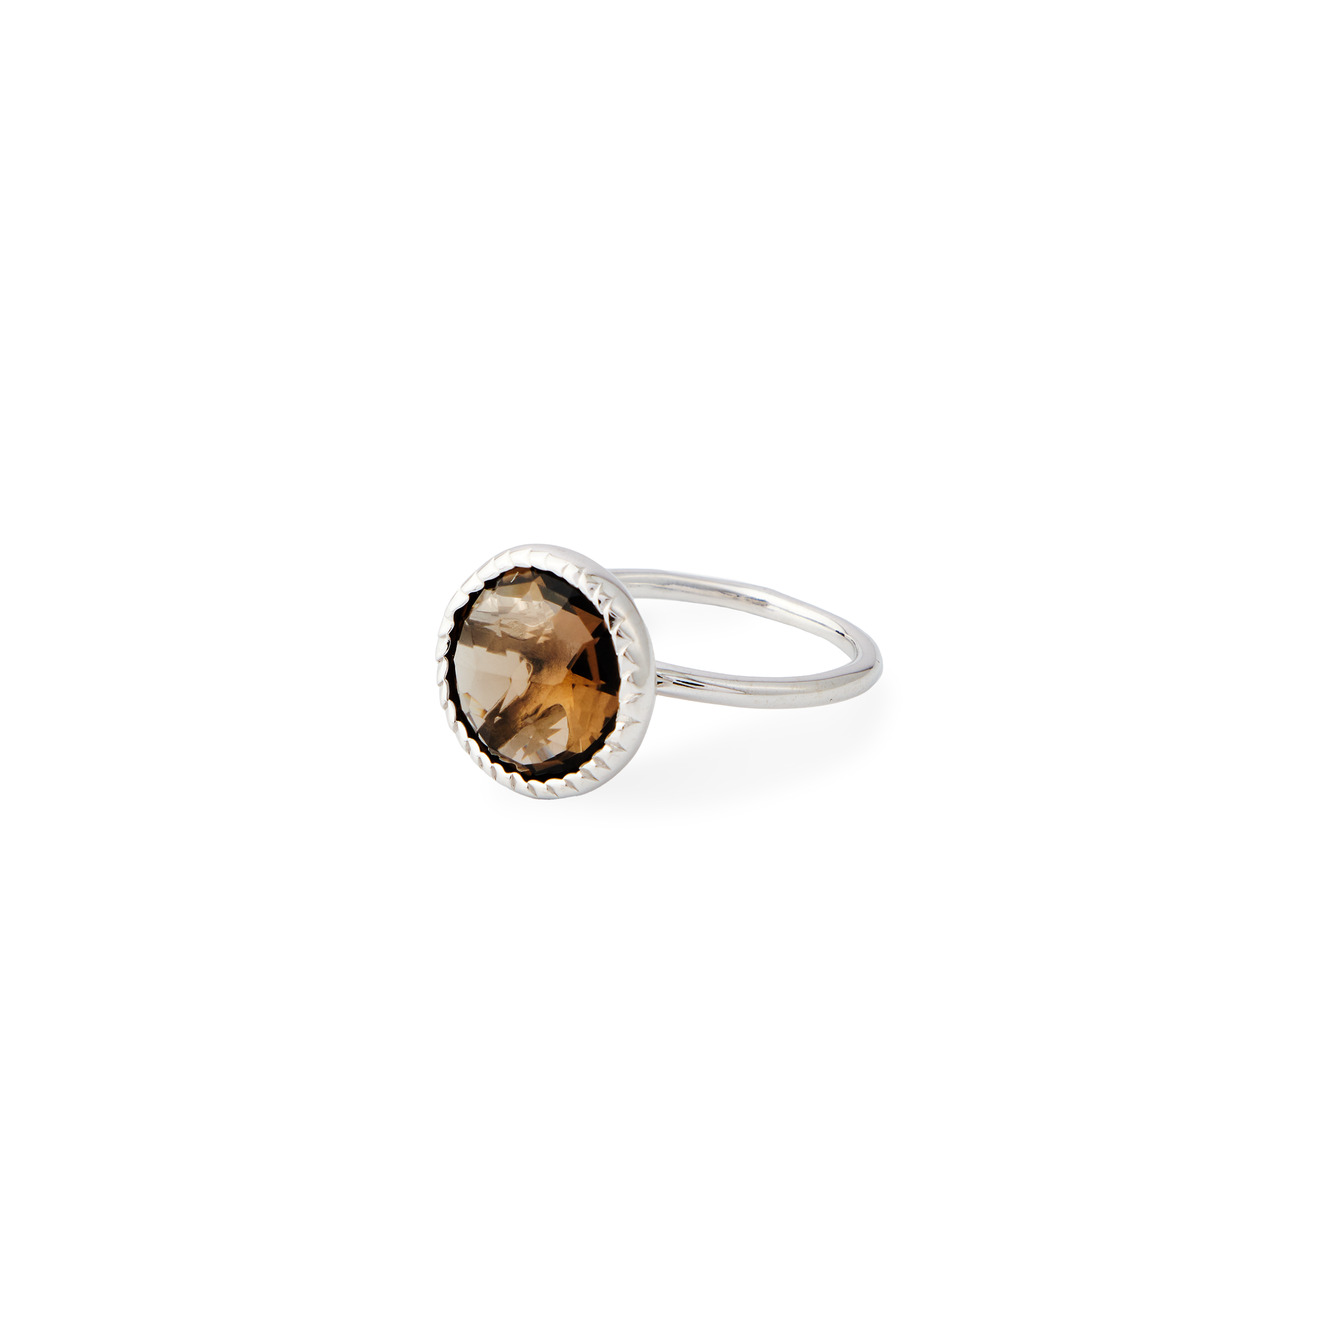 Wisteria Gems Серебряное кольцо тонкое с круаным дымчатым кварцем wisteria gems серебряное кольцо с амазонитом в форме хексагона